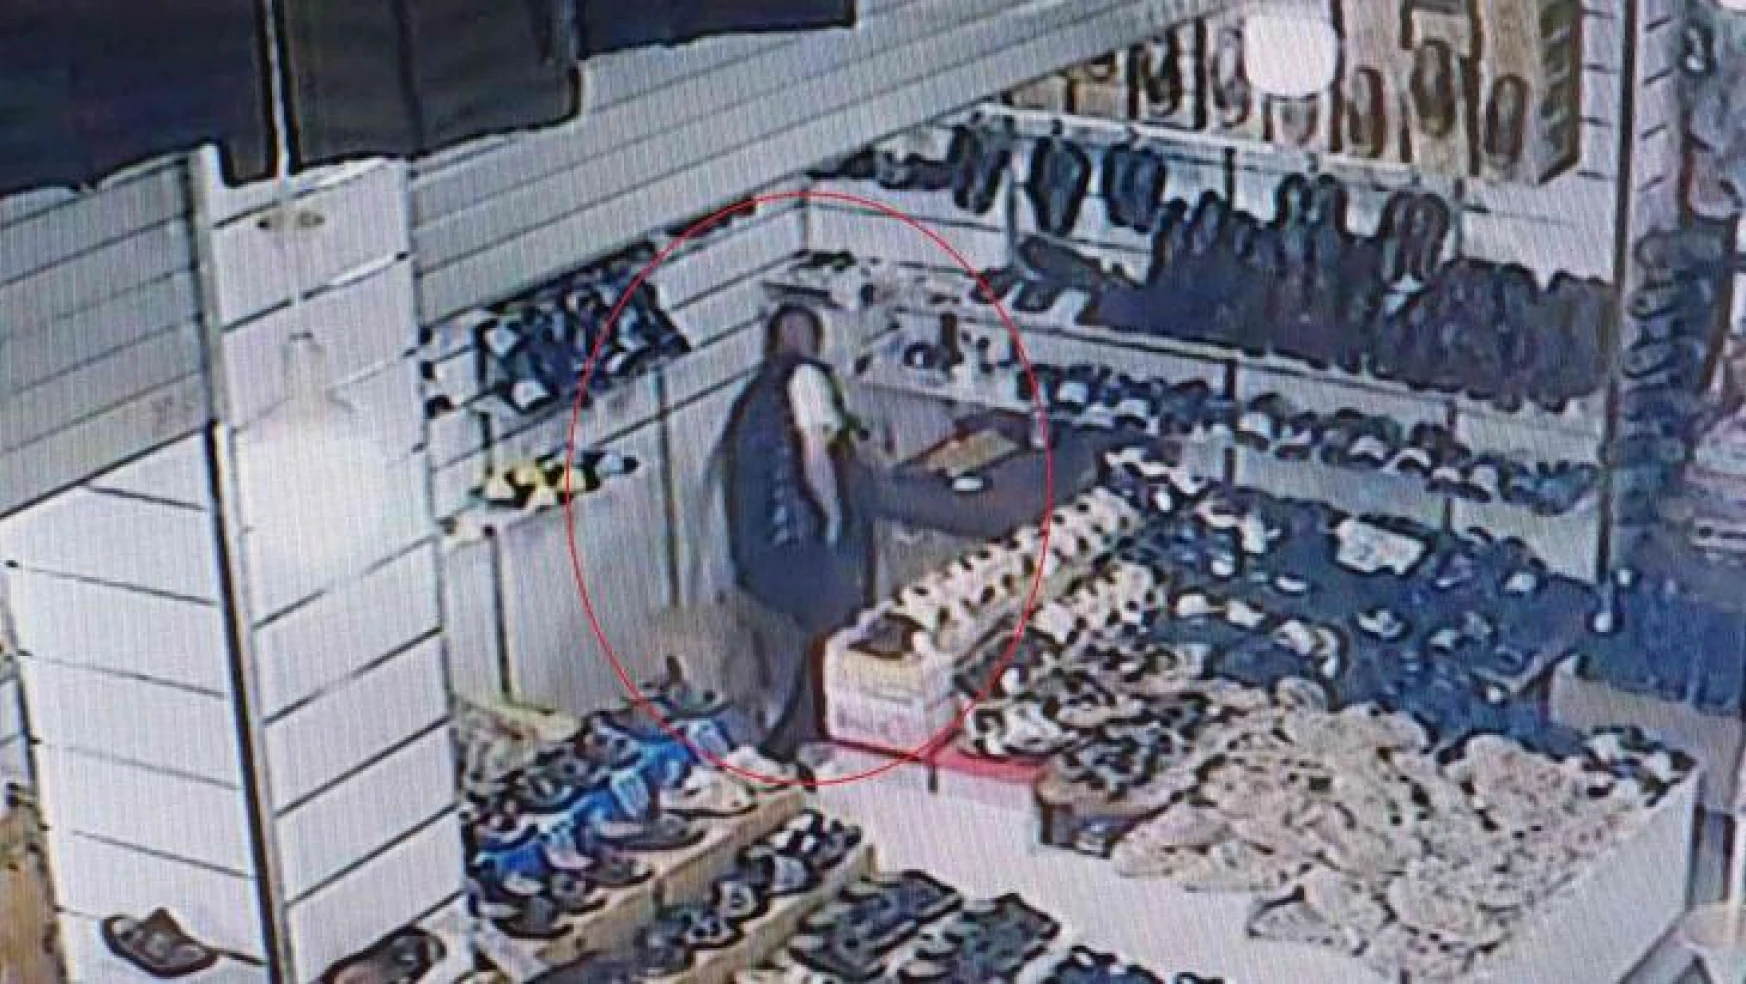 Samsun Yabancılar Çarşısı'nda iş yerinden para hırsızlığı kamerada